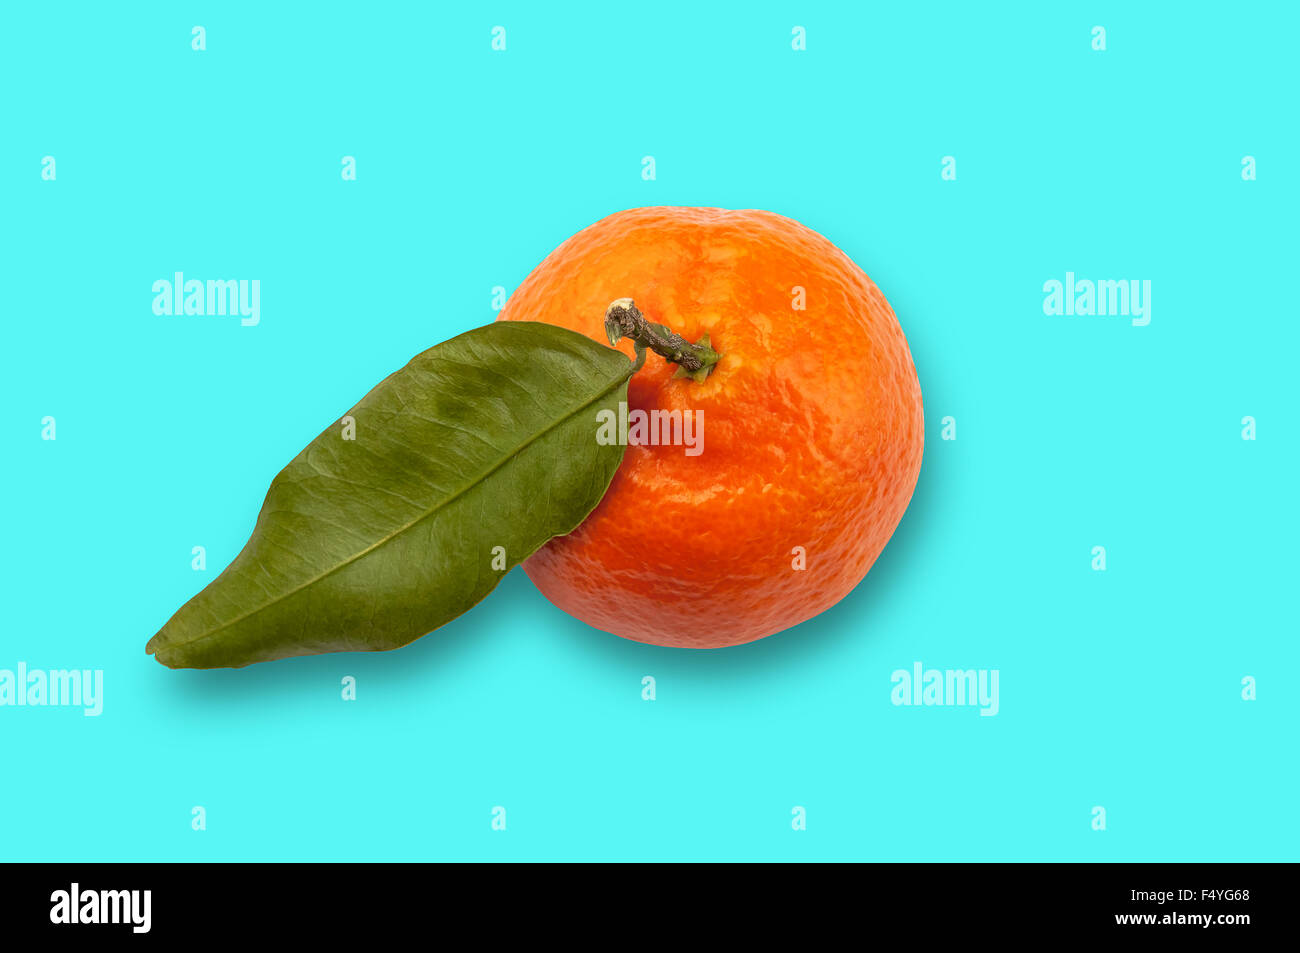 Unico frutto Satsuma percorso di clipping turchese sfondo blu Foto Stock